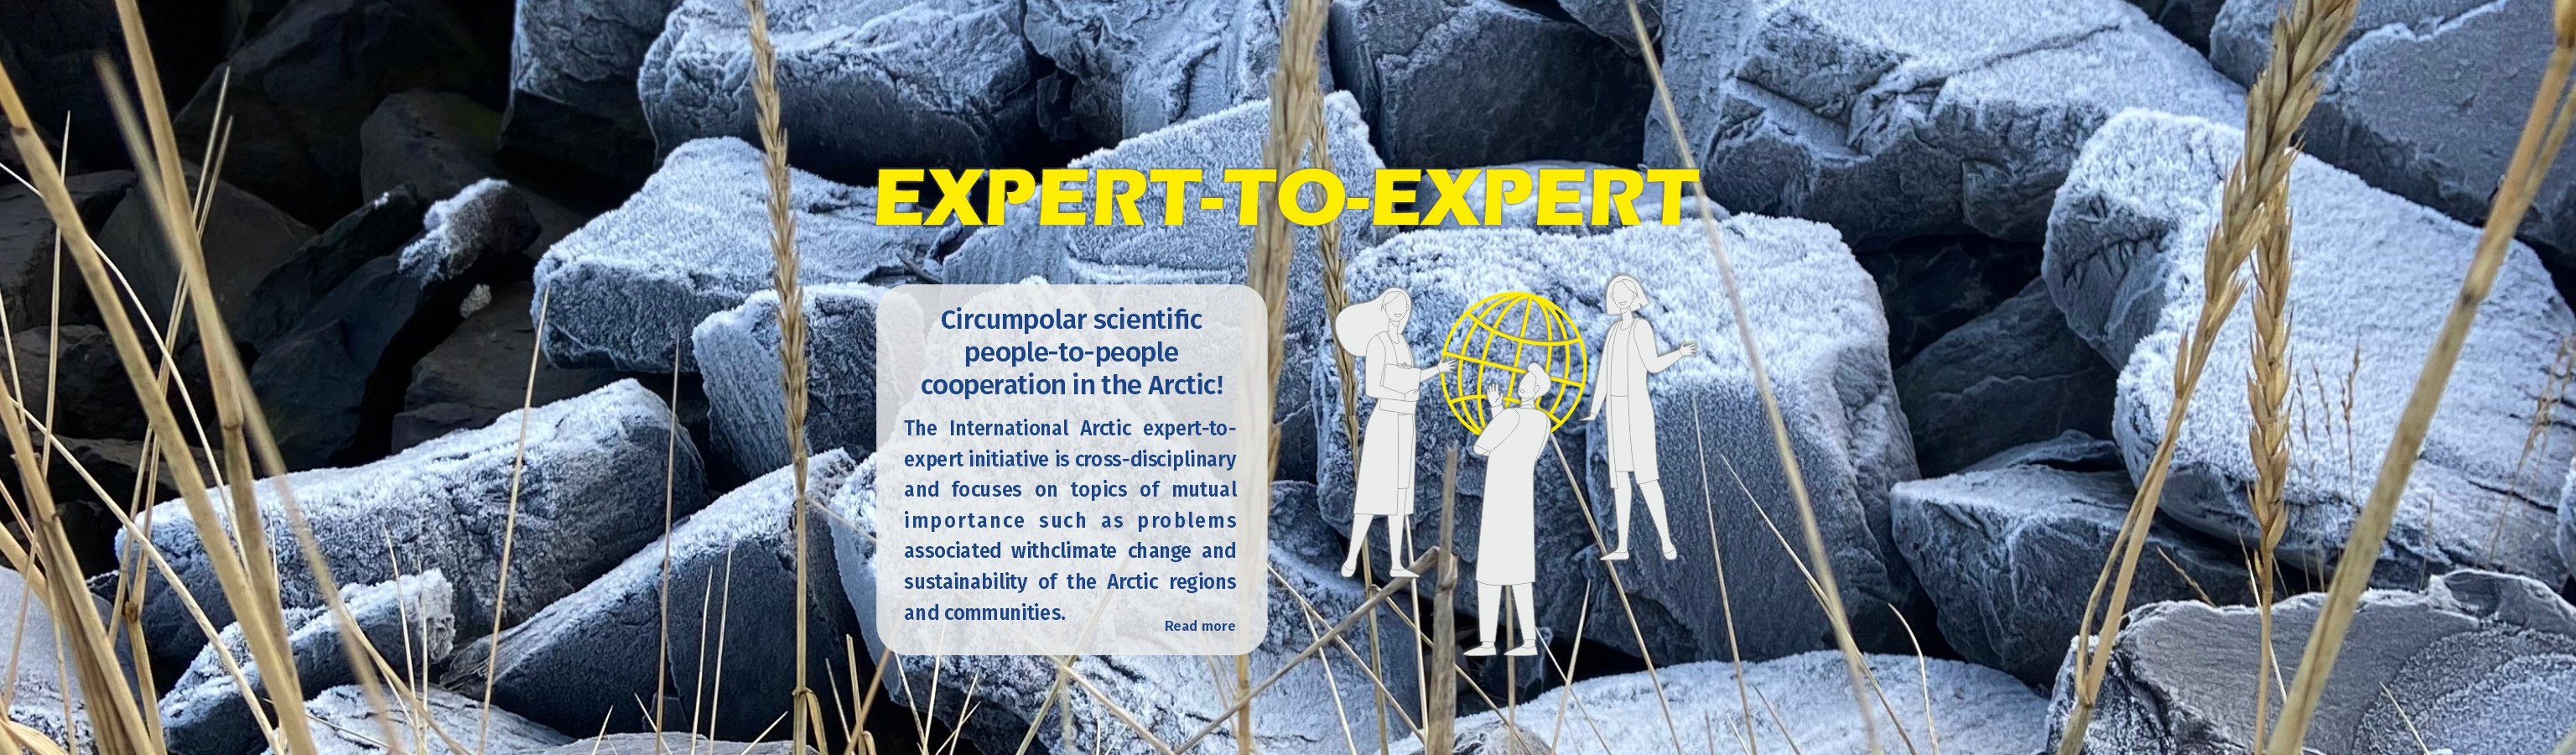 Arctic Portal Expert To Expert